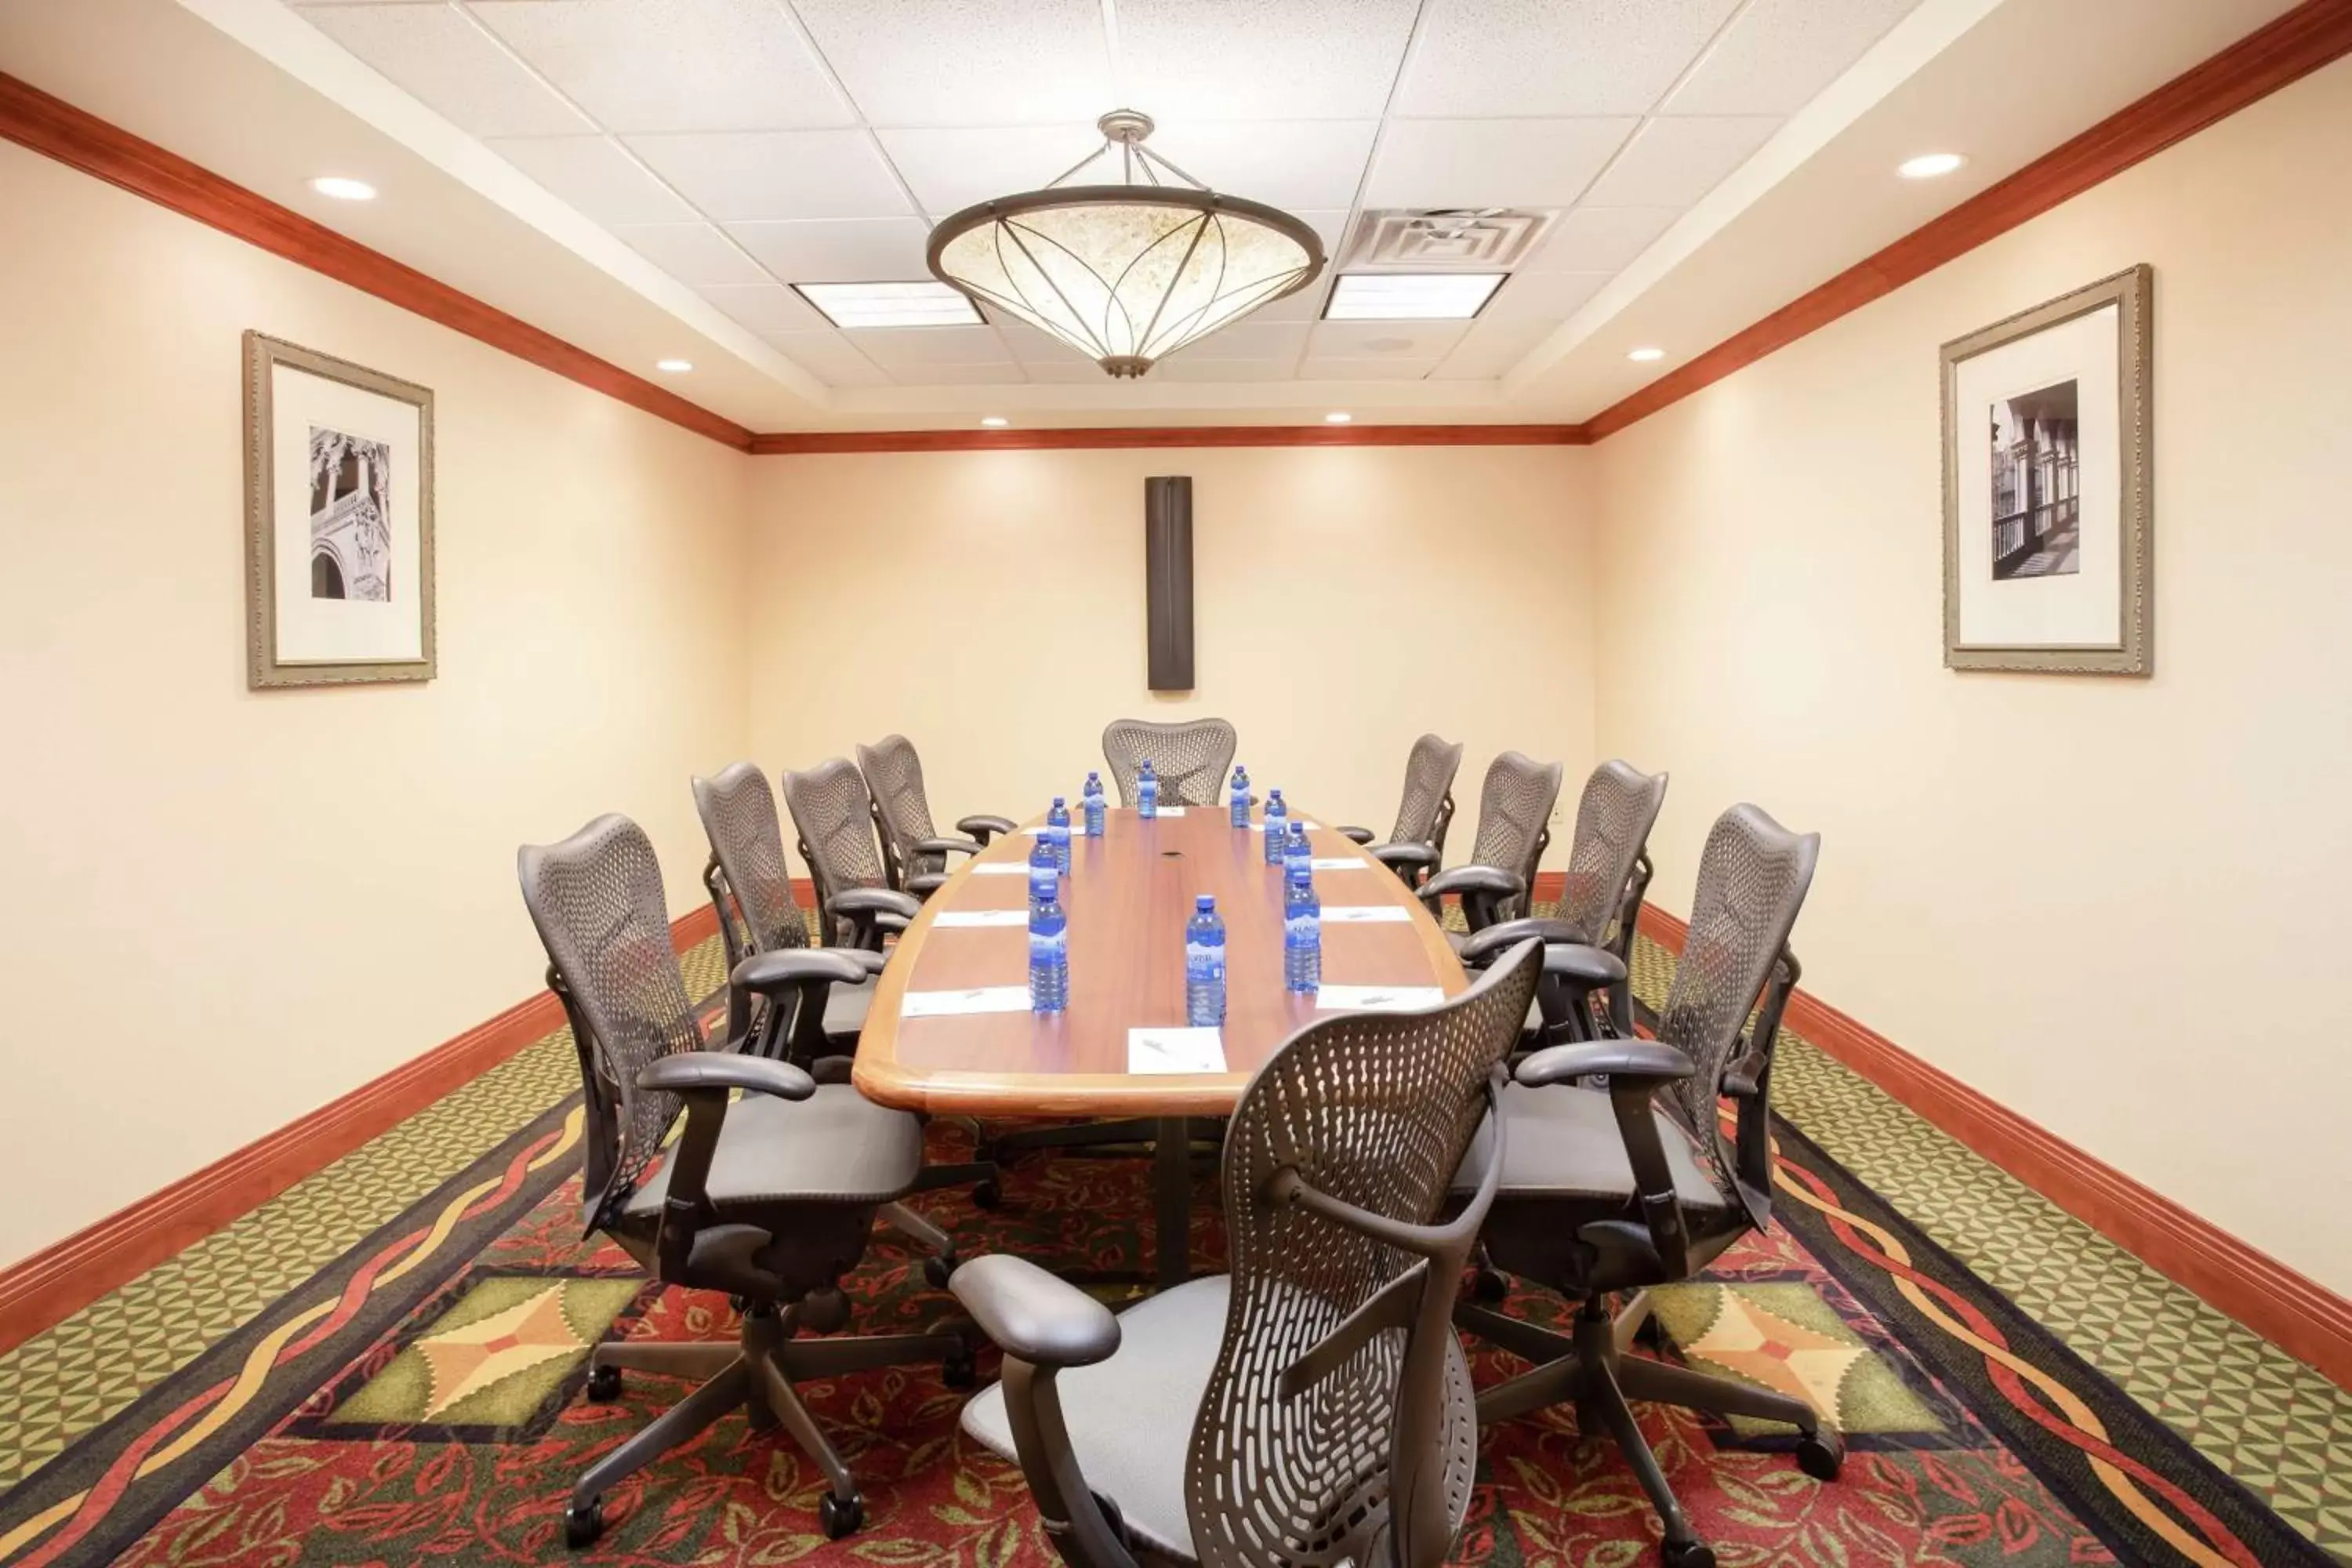 Meeting/conference room in Hilton Garden Inn Casper